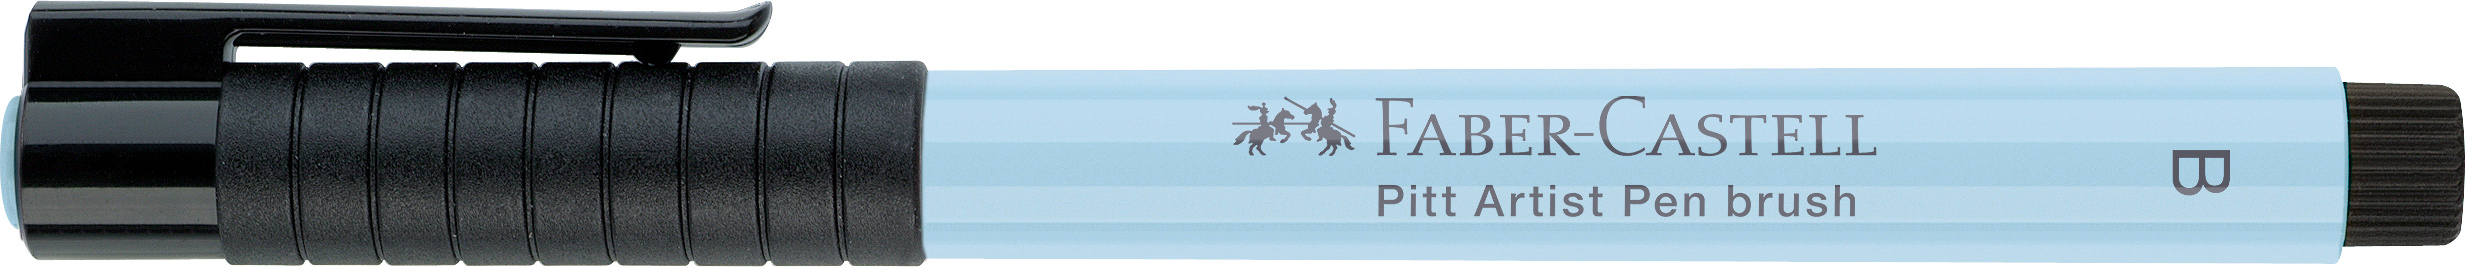 FABER-CASTELL Pitt Artist Pen Brush 2.5mm 167448 ice blue